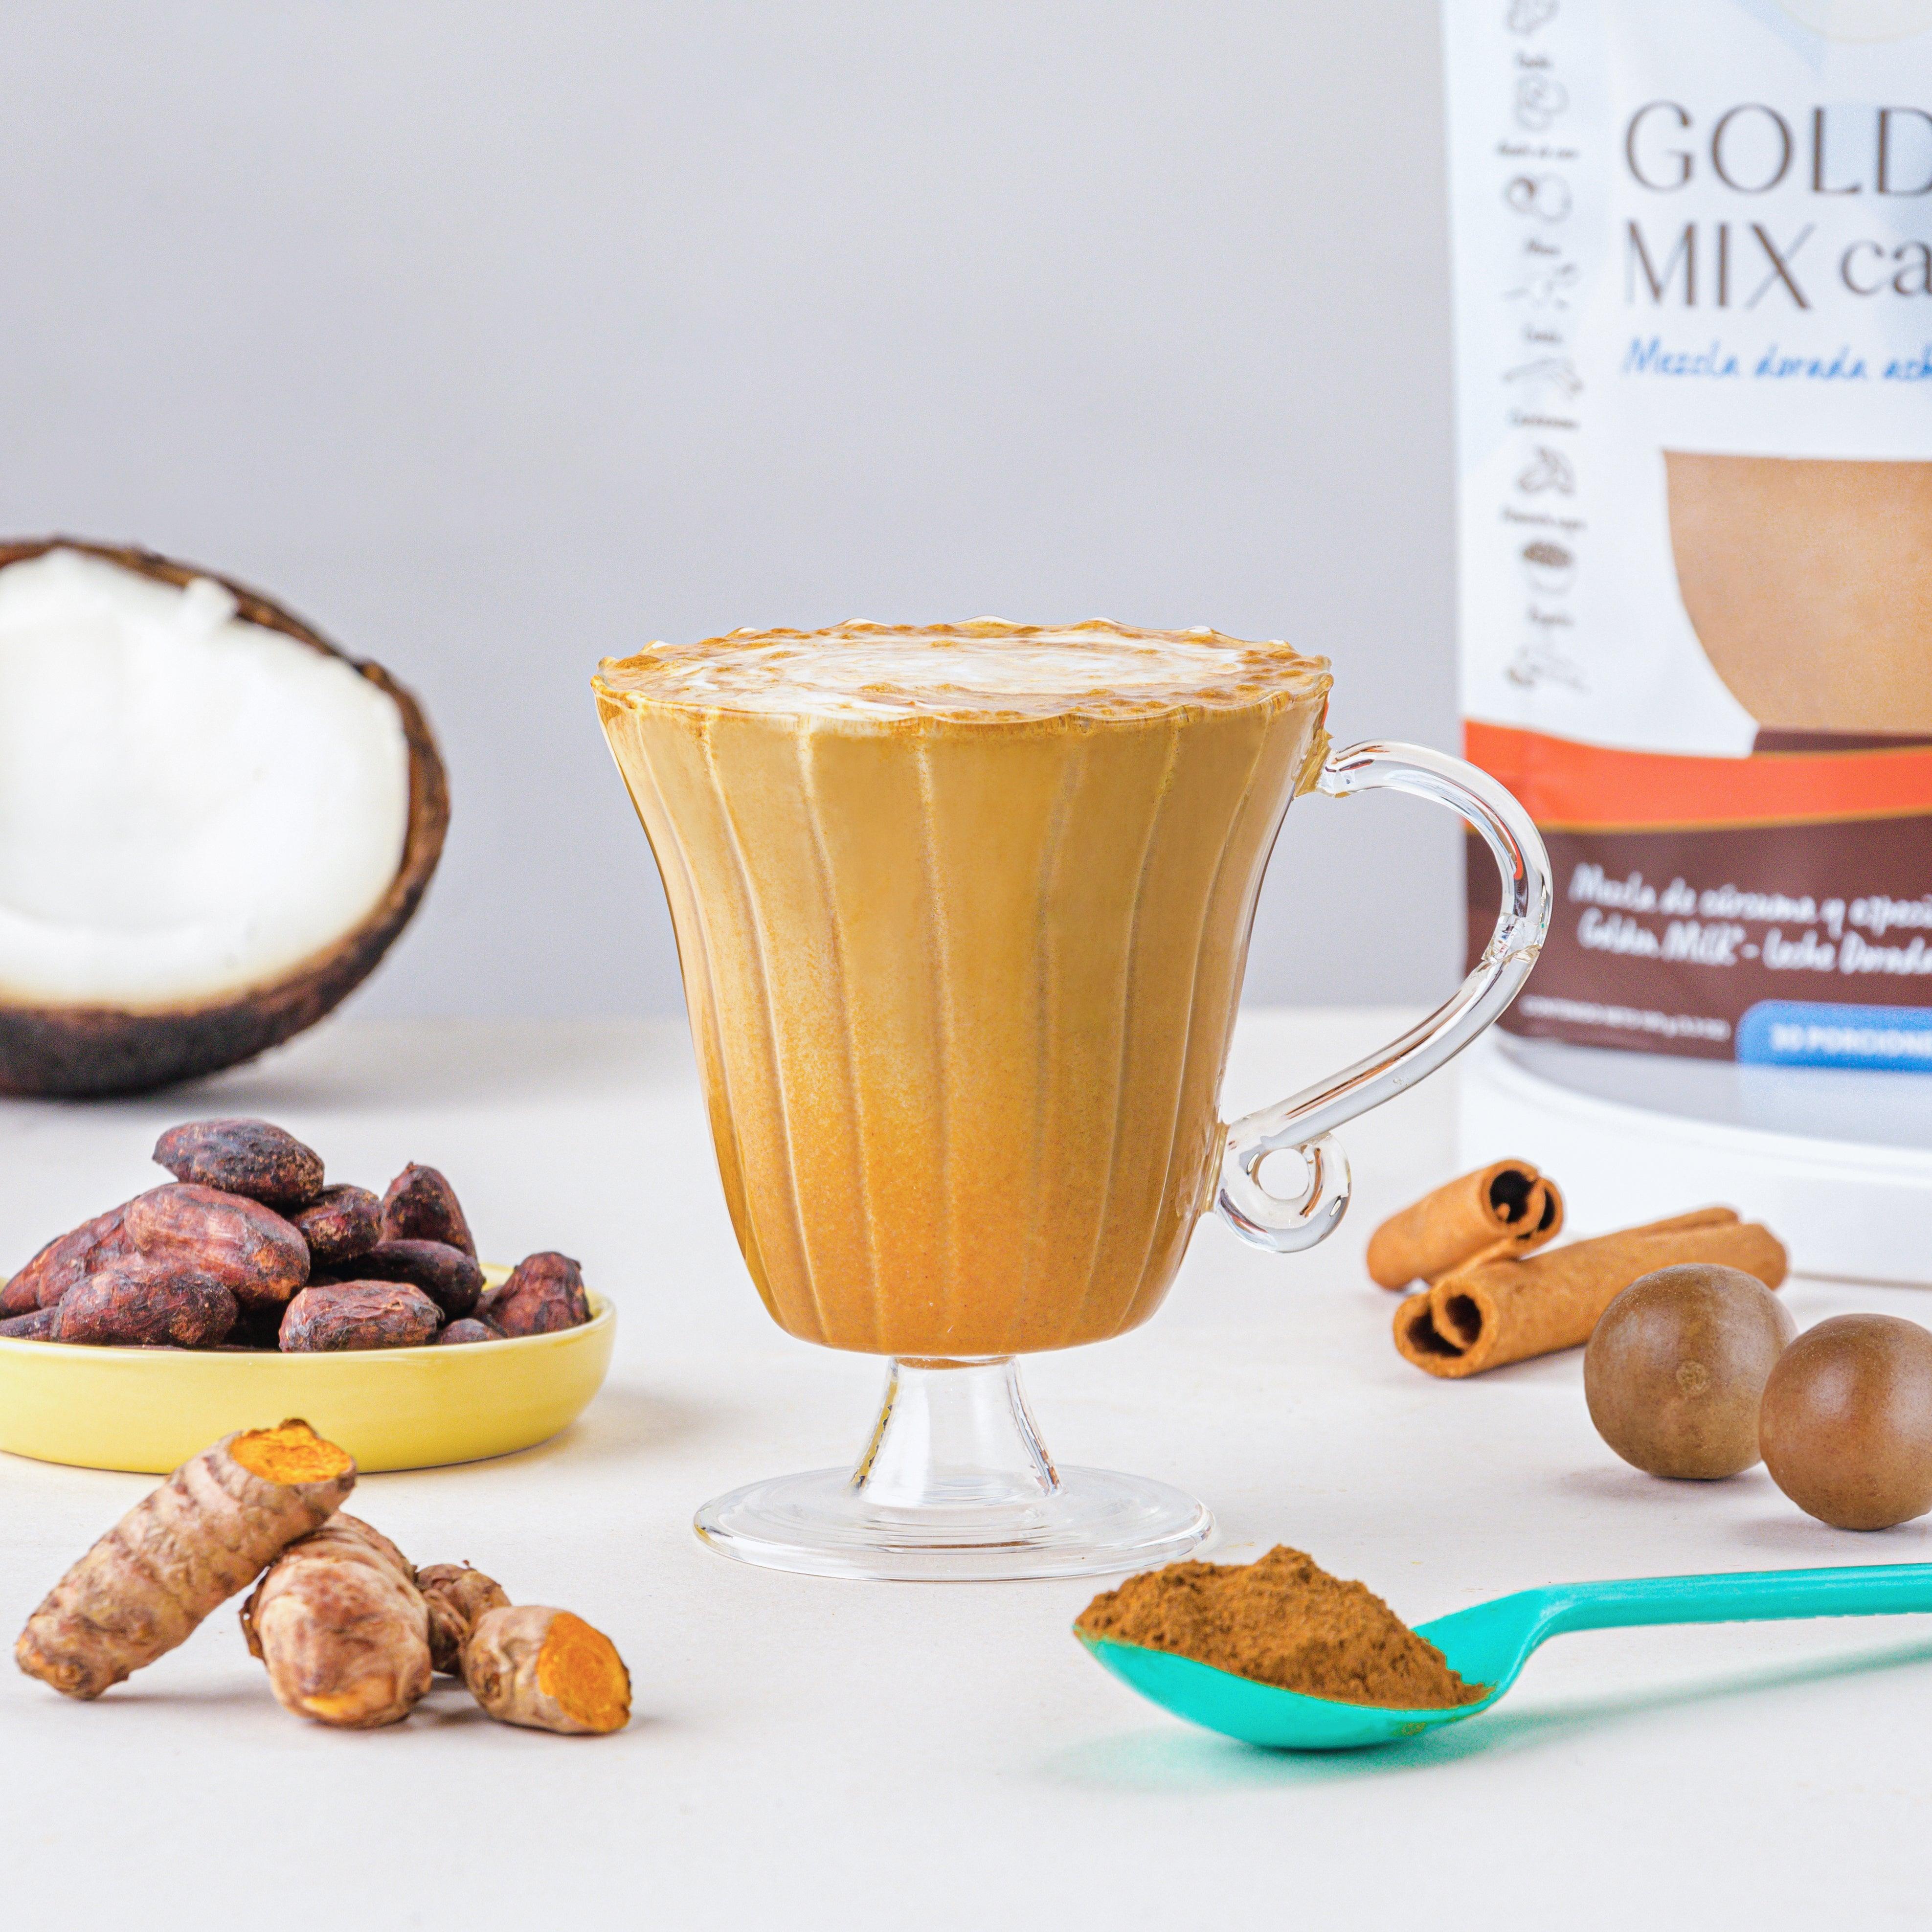 PADAM Golden Milk Cacao